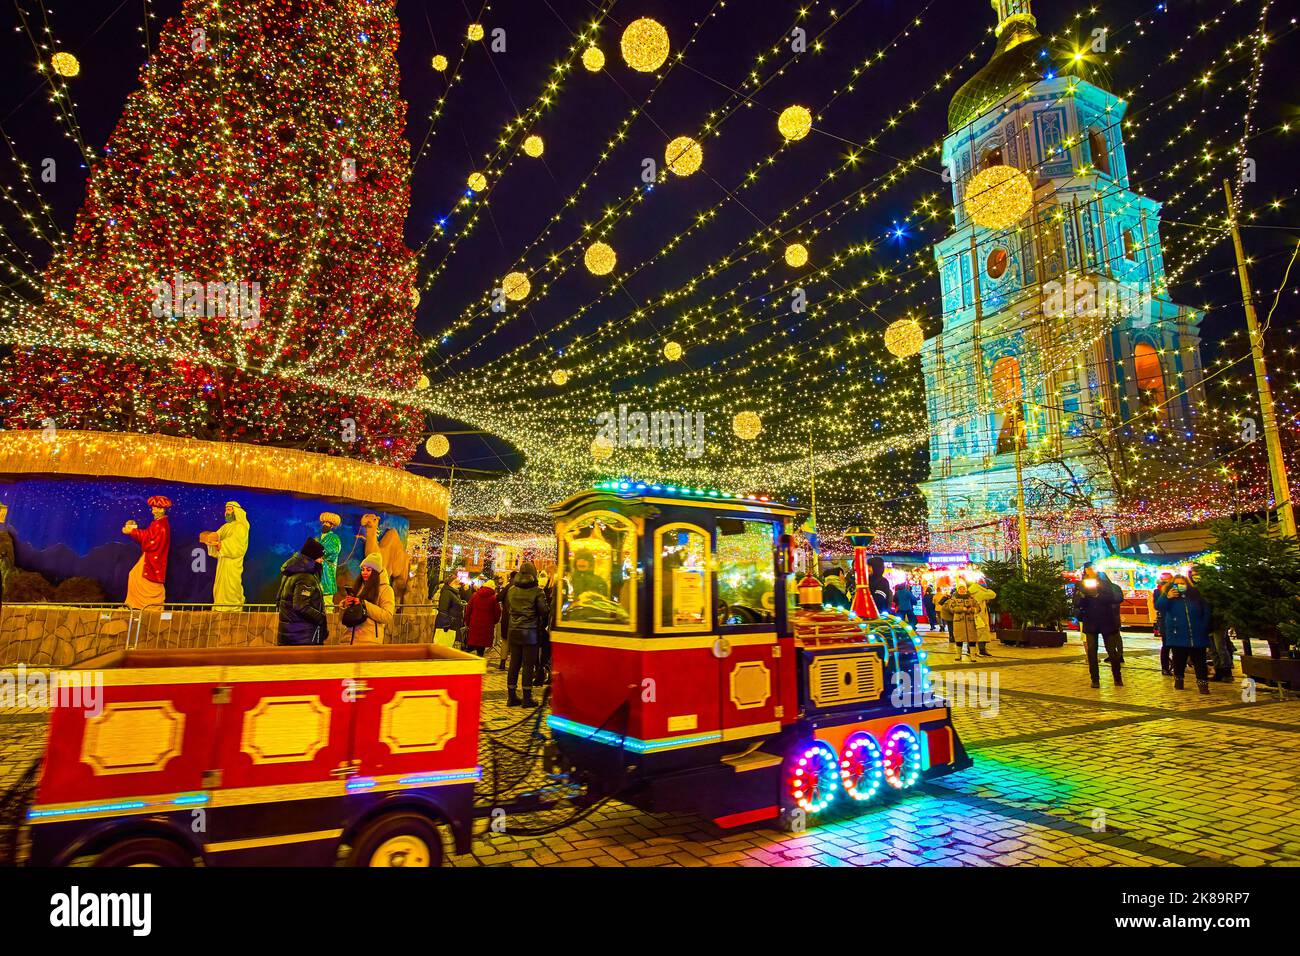 KIEV, UCRAINA - 28 DICEMBRE 2021: Piazza Santa Sofia con bancarelle della Fiera di Natale, treno turistico lucido, albero di Natale principale e il campanile medievale di San Foto Stock